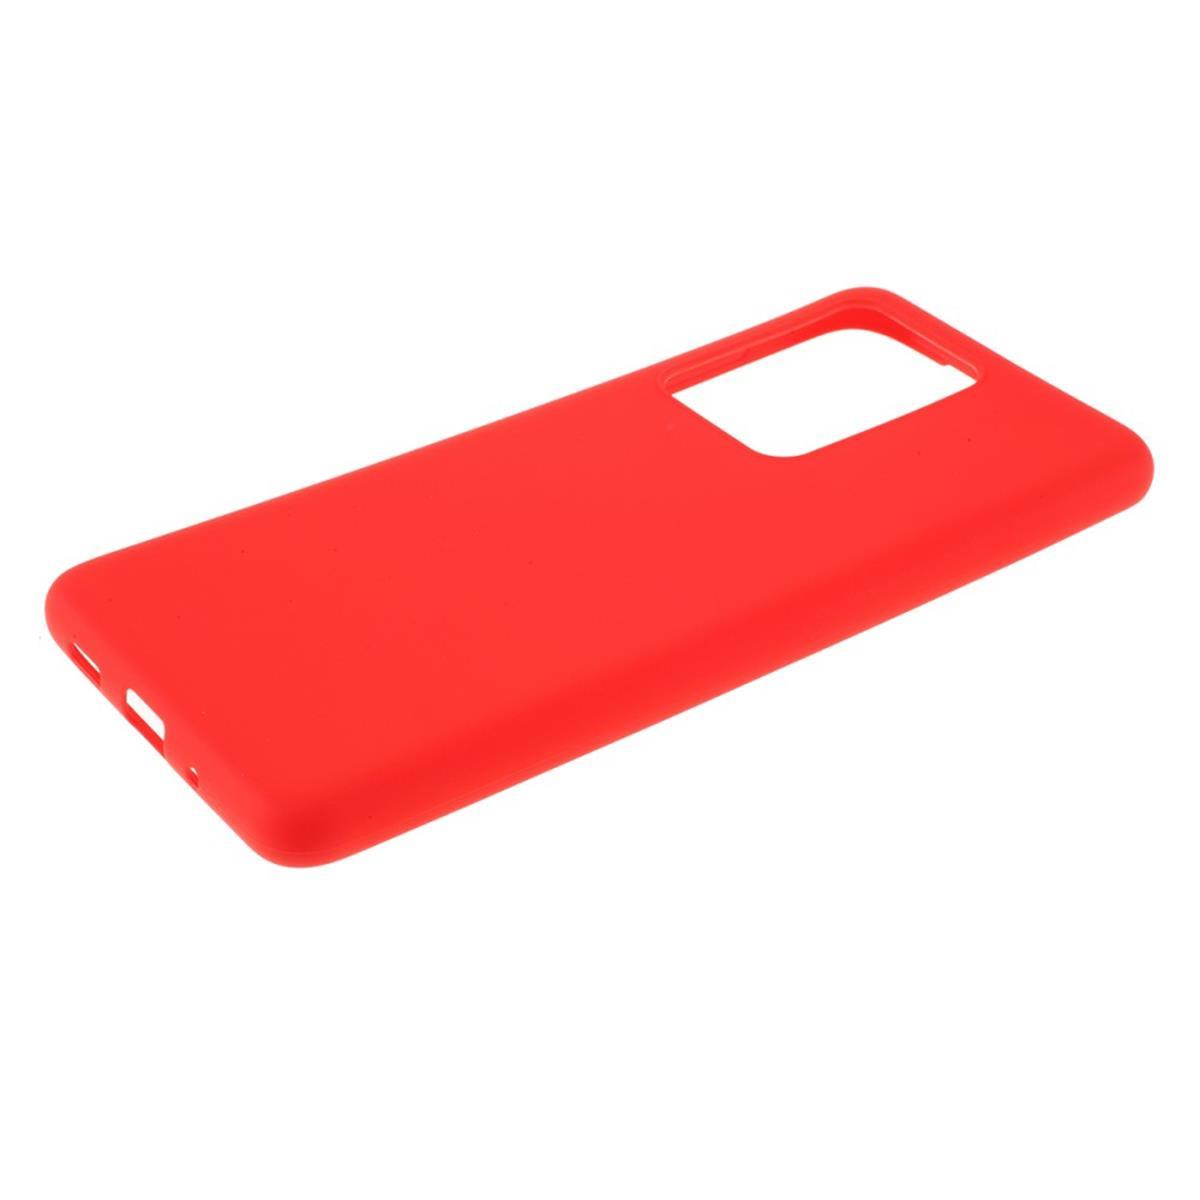 COVERKINGZ Handycase aus Silikon, Backcover, Rot / Redmi Prime, Redmi Xiaomi, 10 10